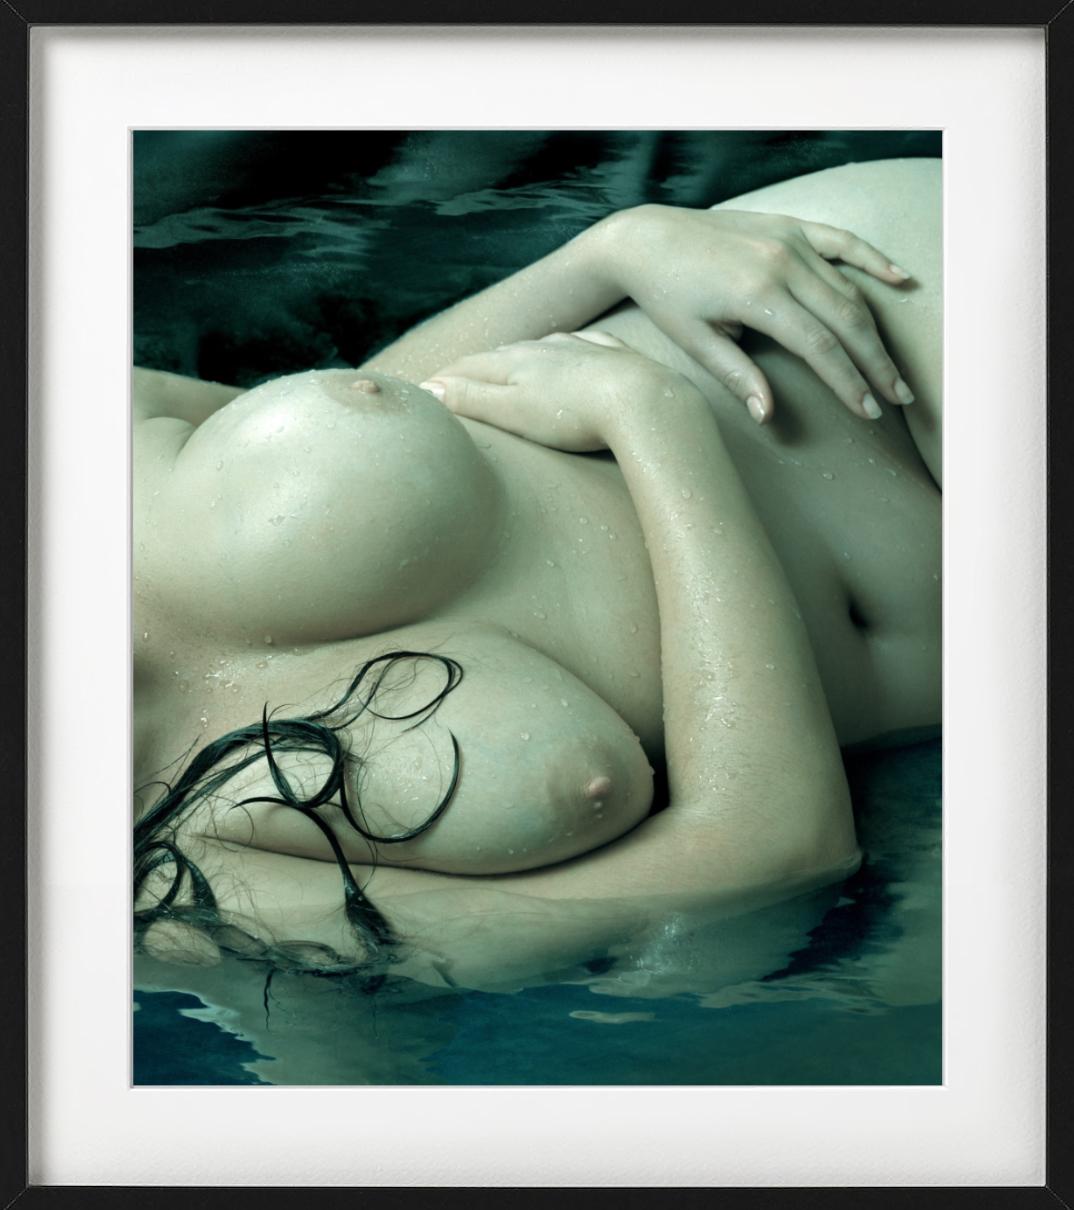 Jennifer Breasts – grün beleuchteter nackter Torso in Wasser, Pistographie der bildenden Kunst, 2011 – Photograph von Albert Watson